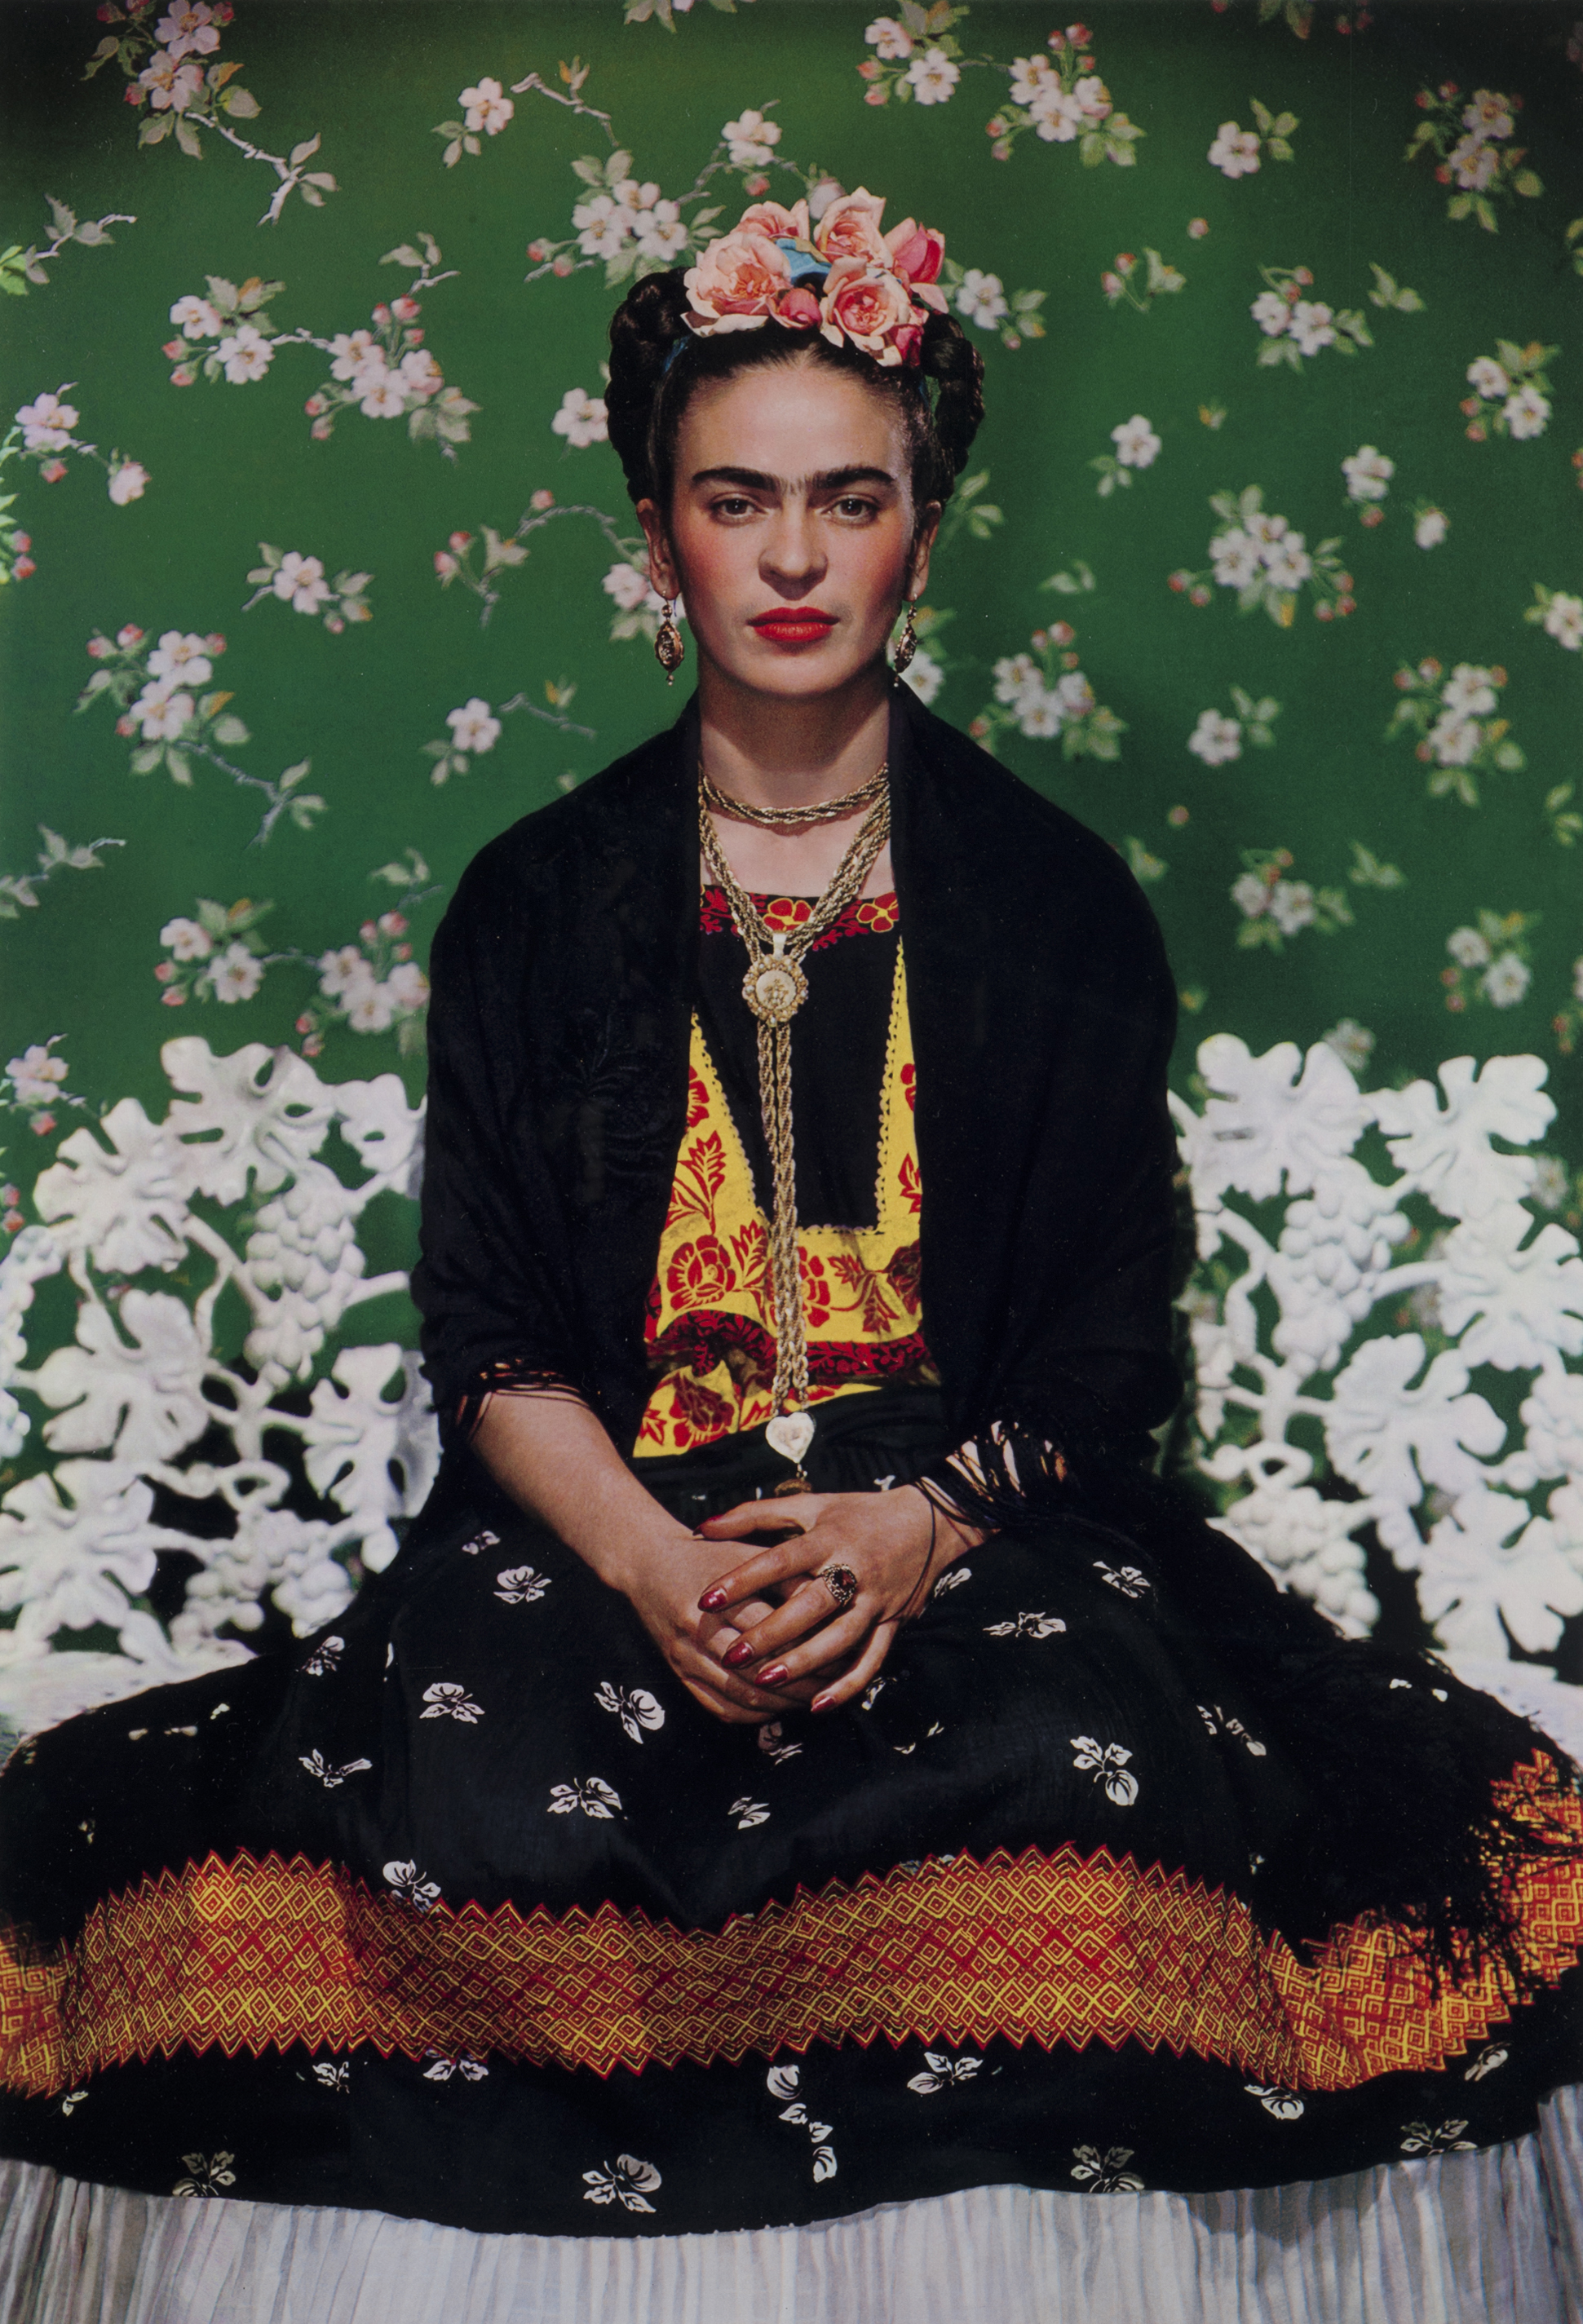 Frida Kahlo on White Bench, New York, 1939